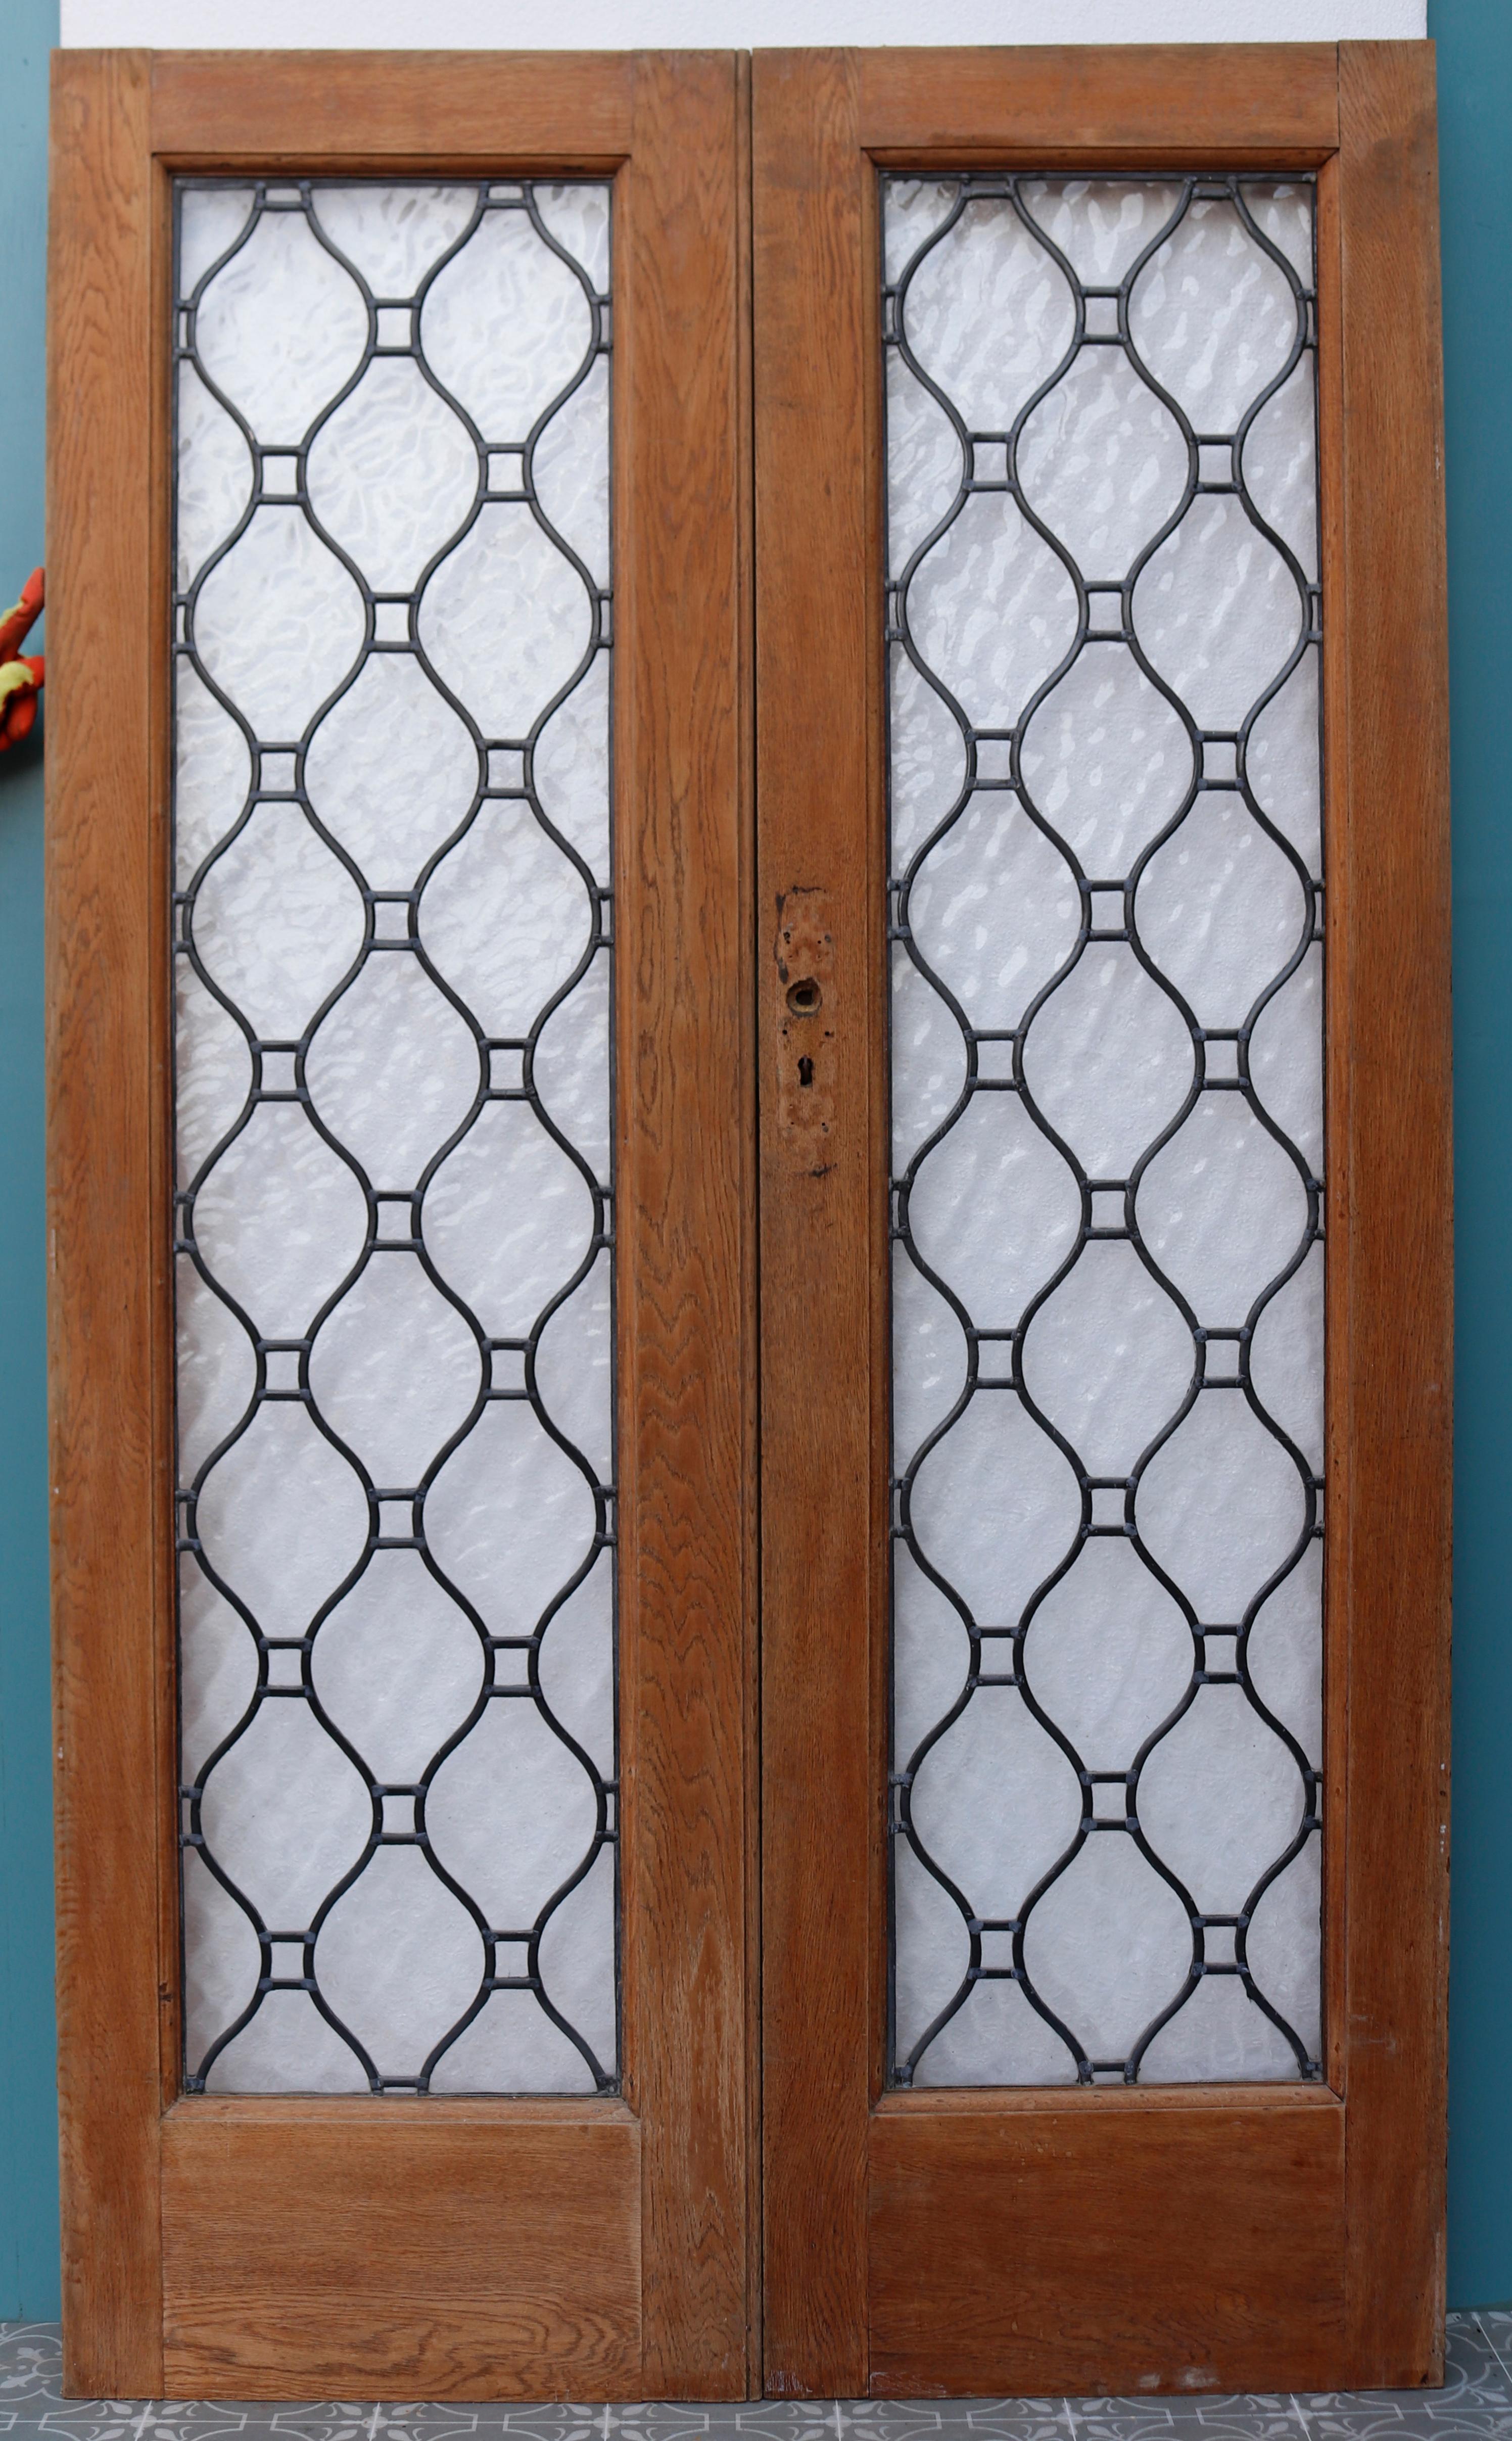 Un ensemble de doubles portes en chêne avec des panneaux en verre texturé plombé. Nous avons deux séries disponibles.
   